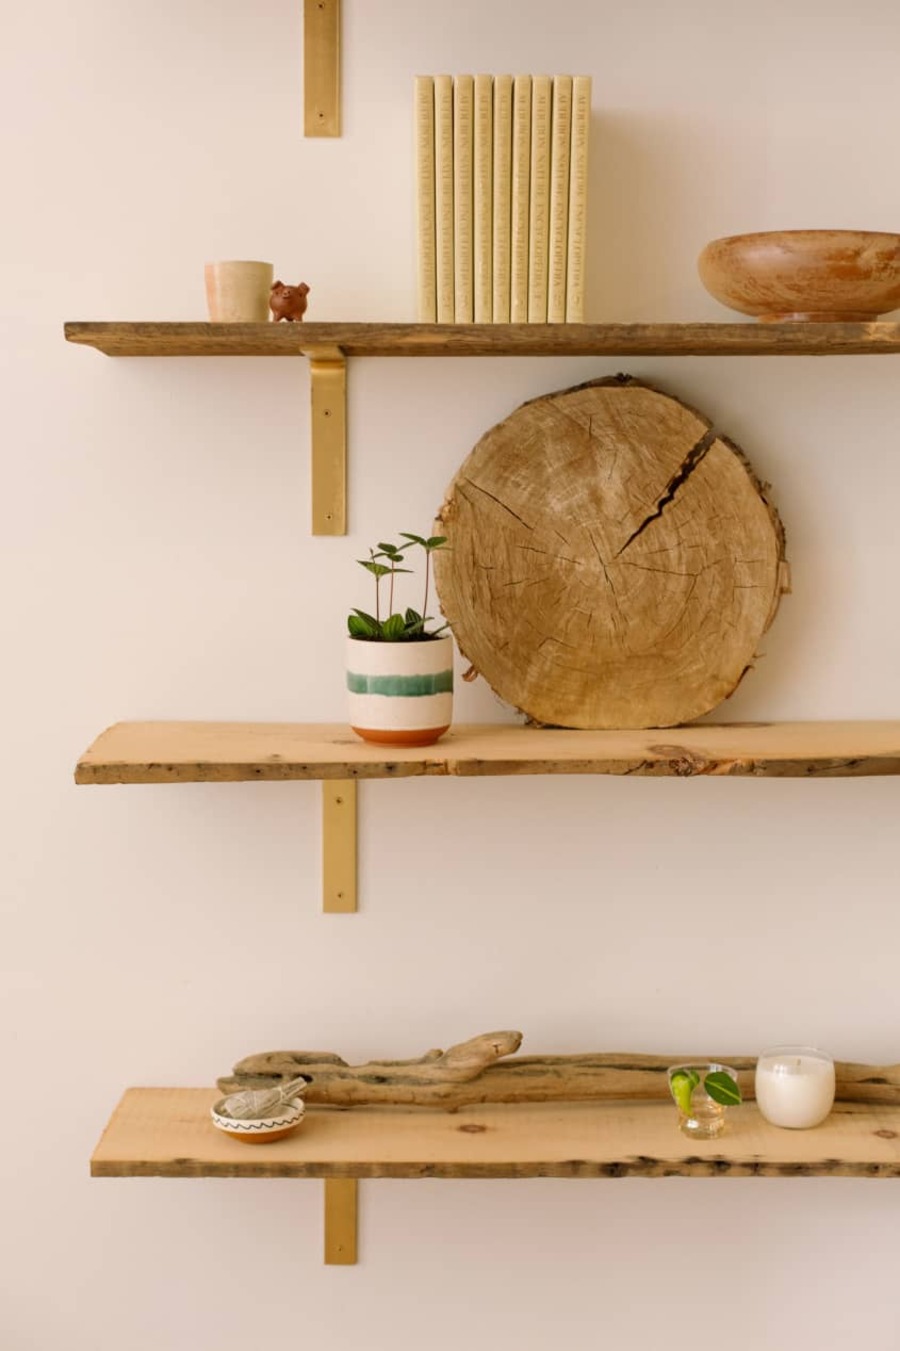 Repisa de madera rústica de tres niveles con diferentes elementos de madera y pequeños adornos en cada uno, incluyendo plantas, una vela, un bowl, libros y una parte de un tronco